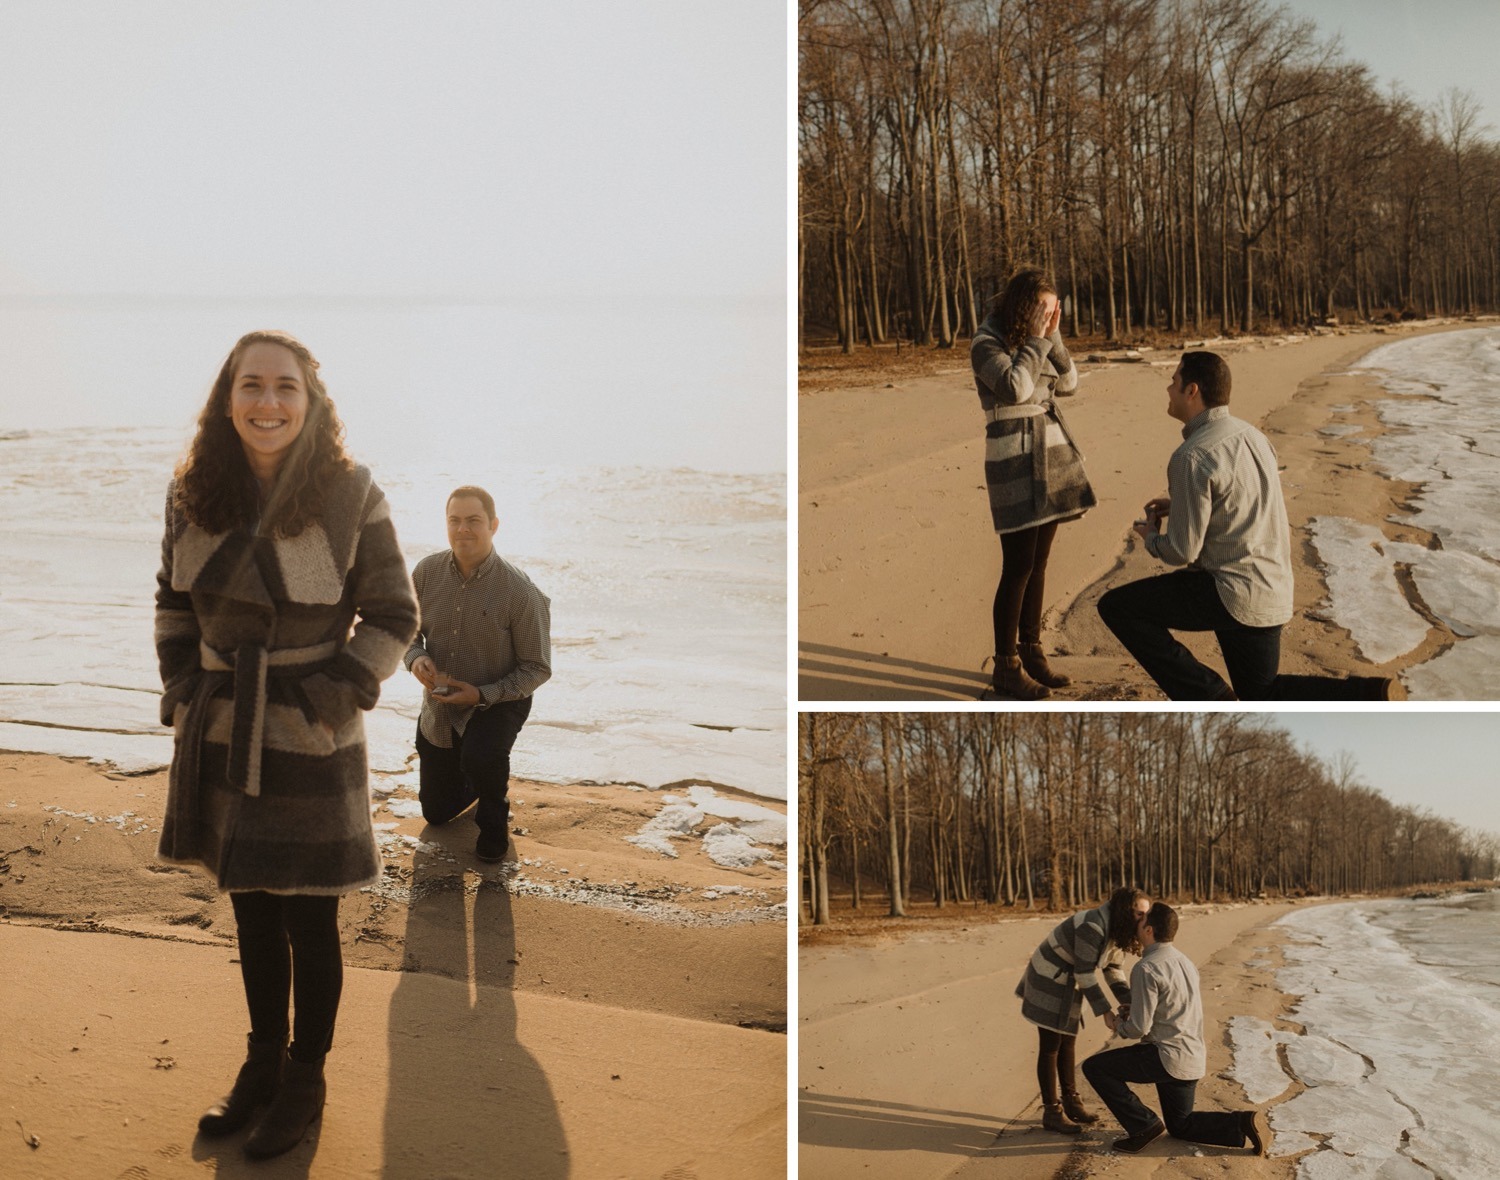 multi image collage of surprise wedding proposal